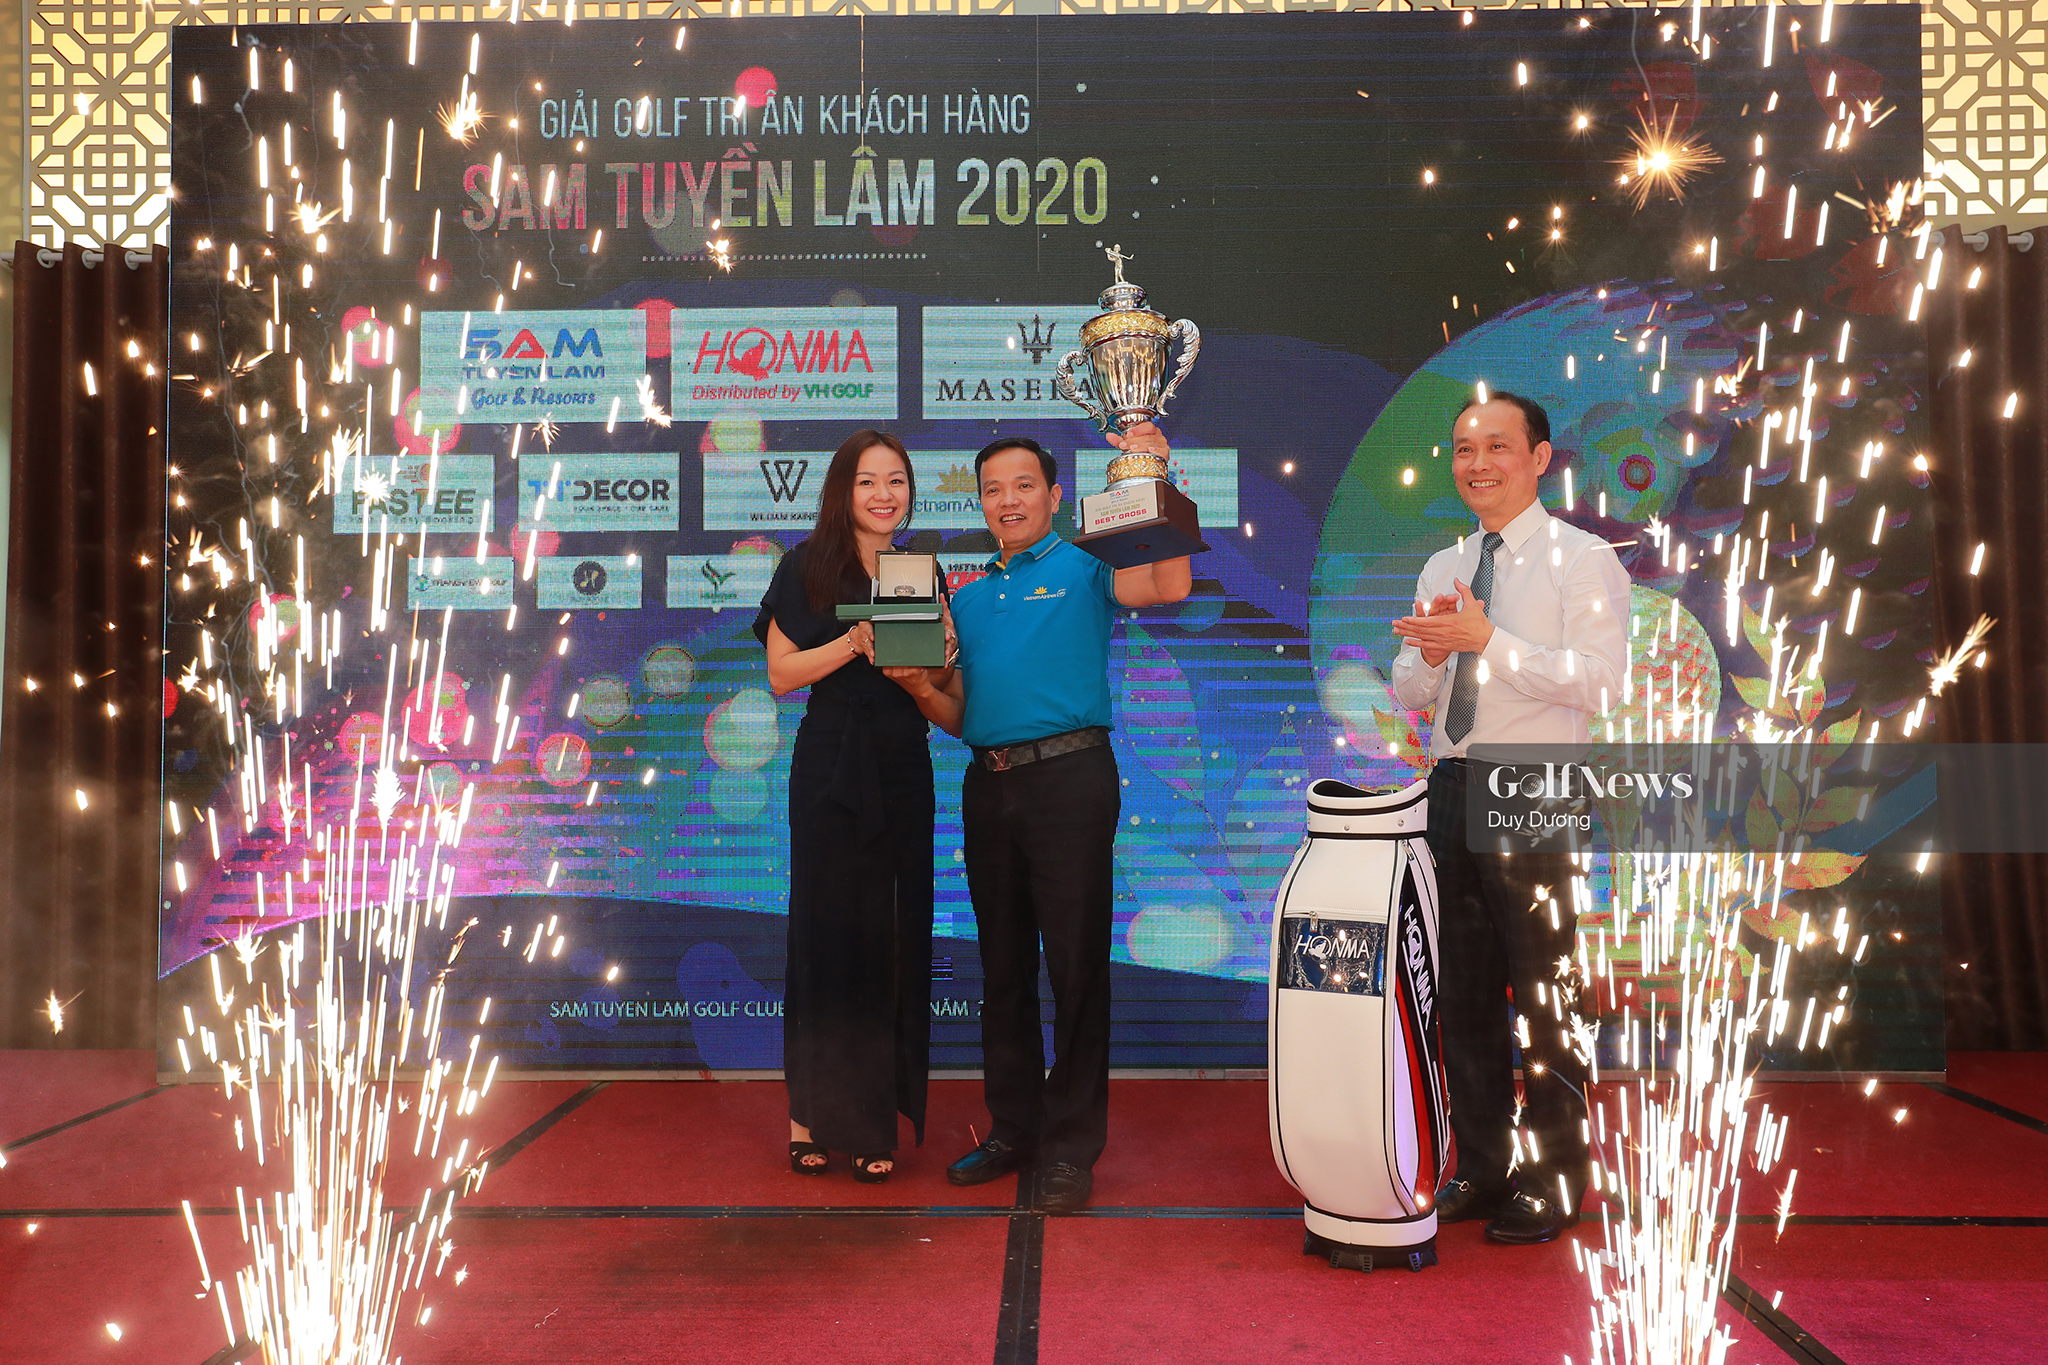 Golfer Vương Đức Phúc vô địch giải Tri ân Khách hàng SAM Tuyền Lâm 2020